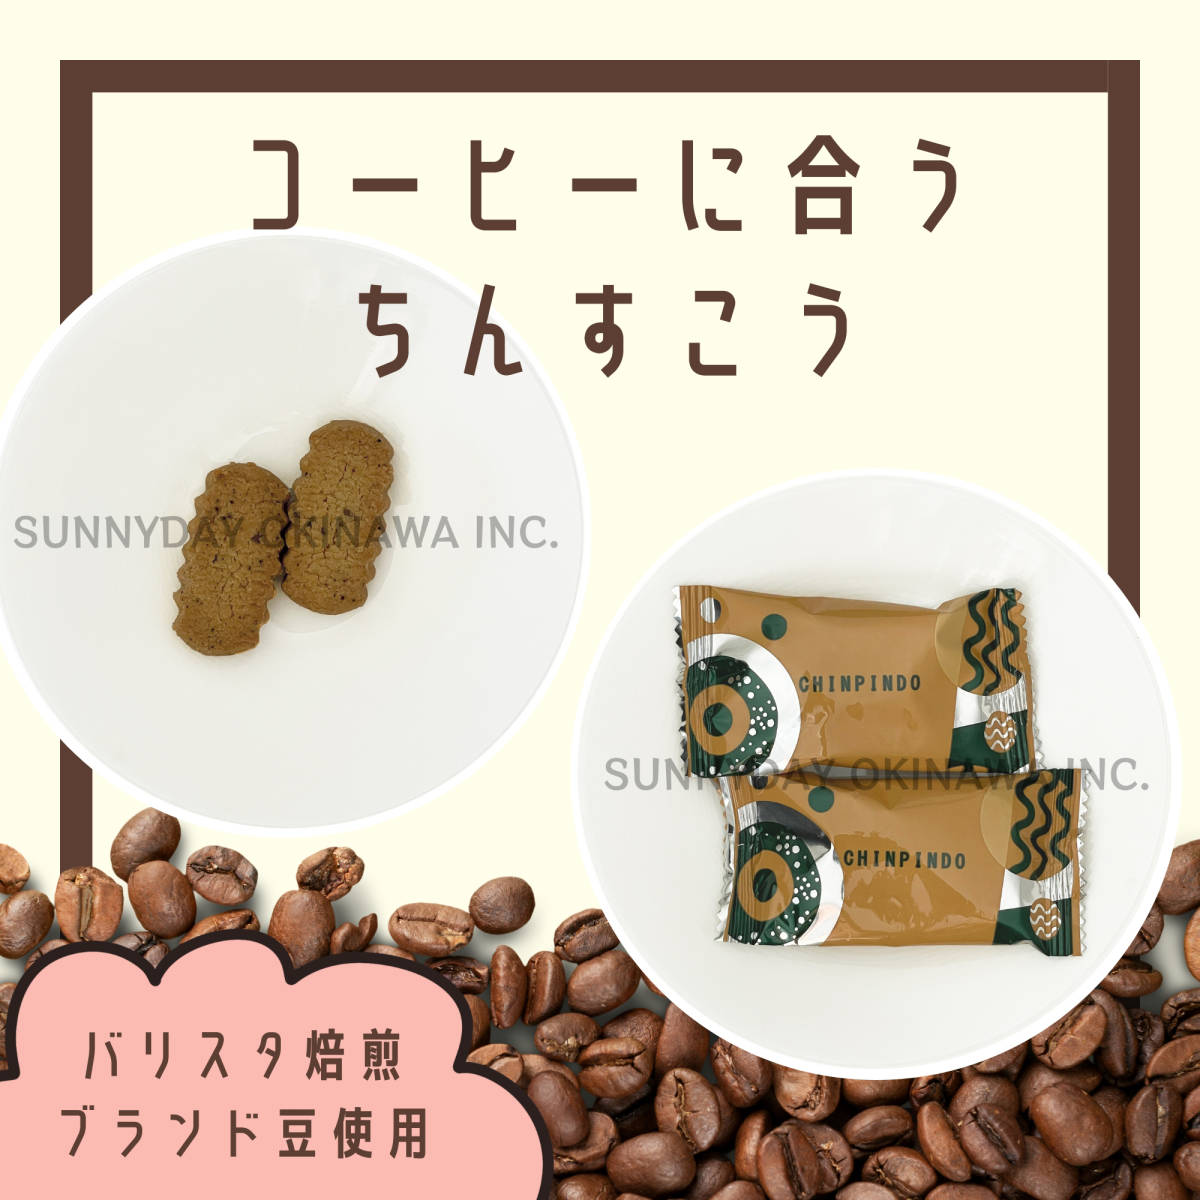  редкость  ...    кофе  ... ... 5 мешок   mini  мешок  тип    Окинава ...  сувенир       заказывать  